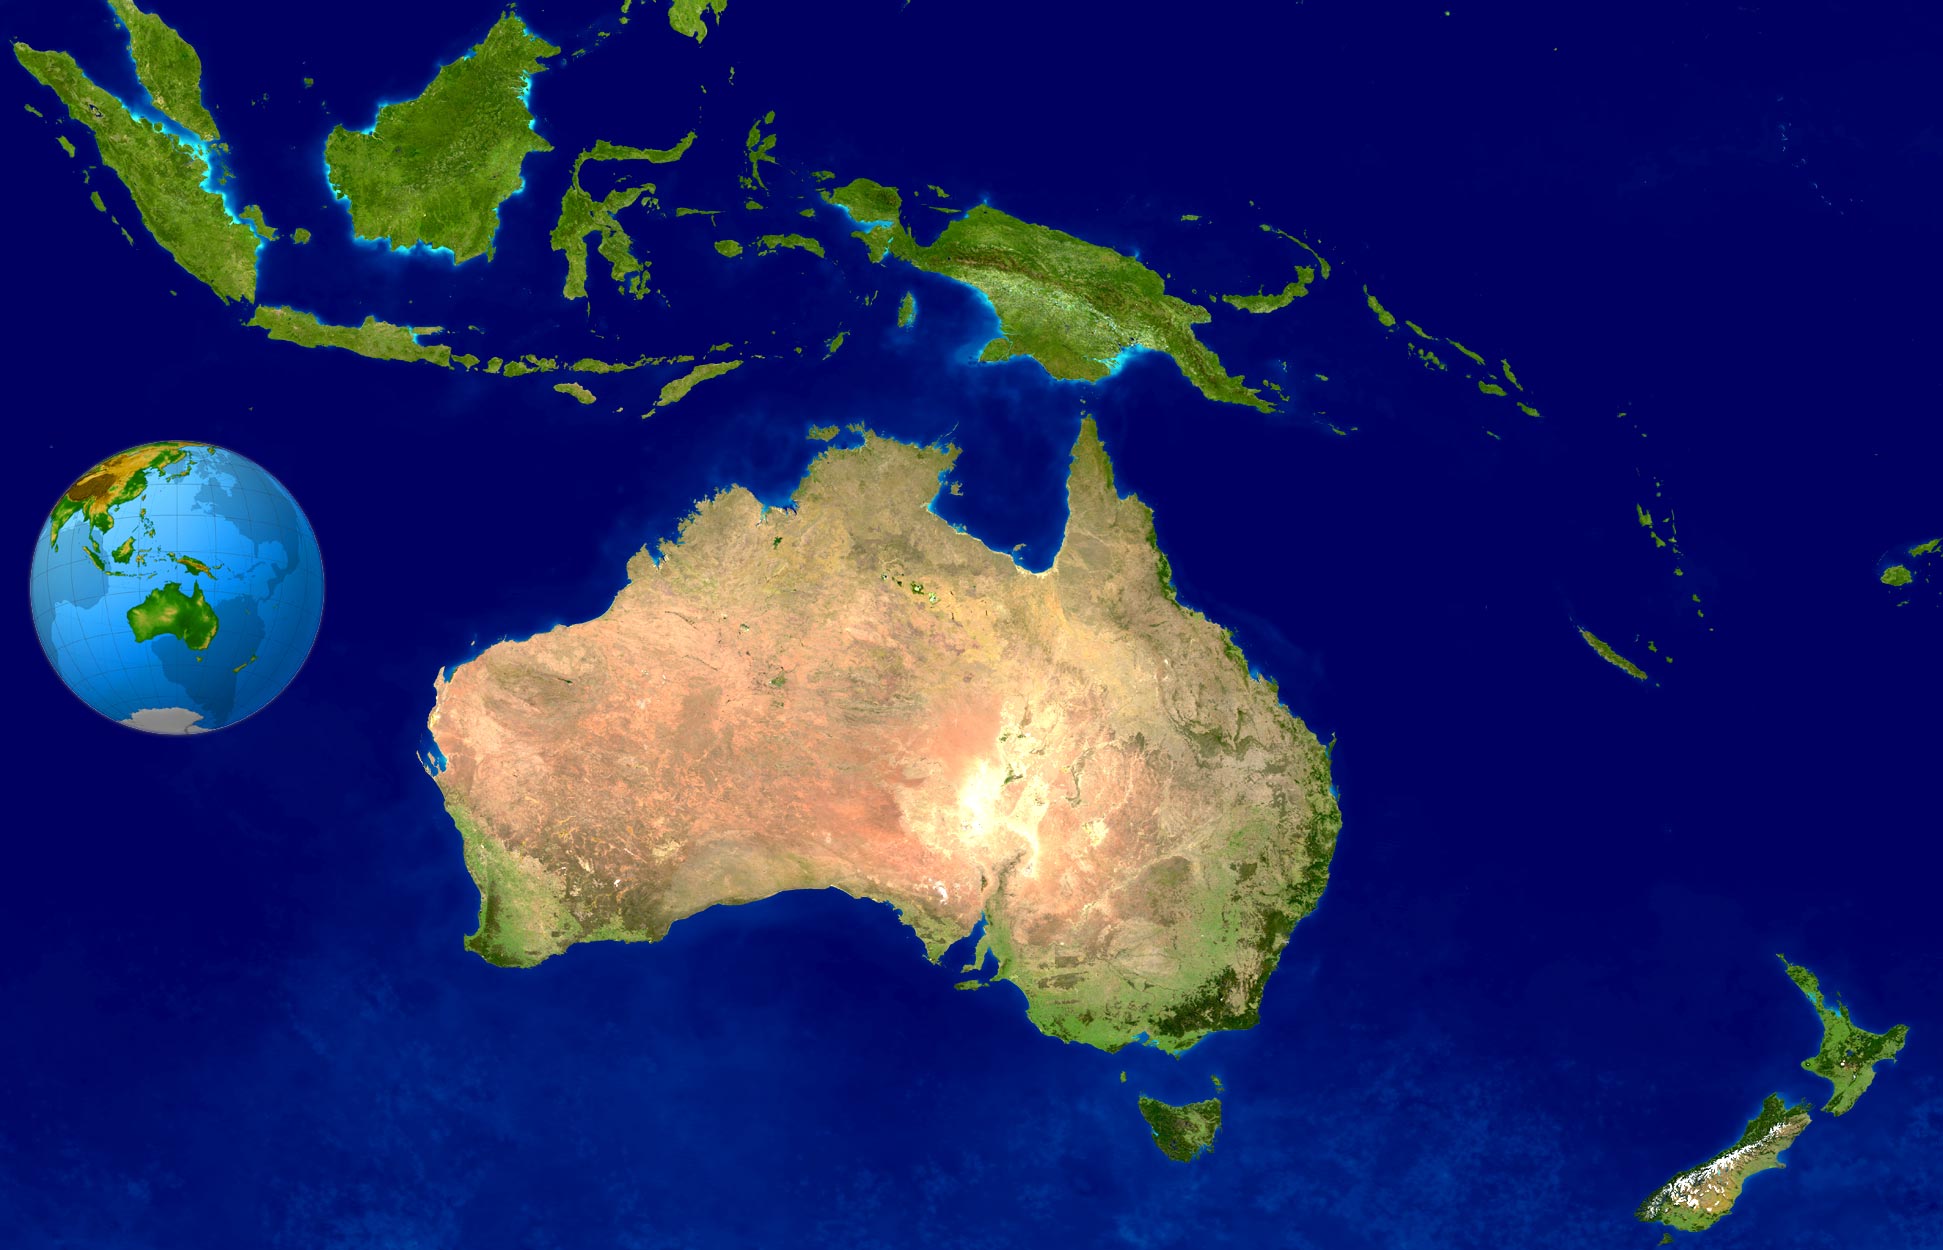 oceania australia satellite image